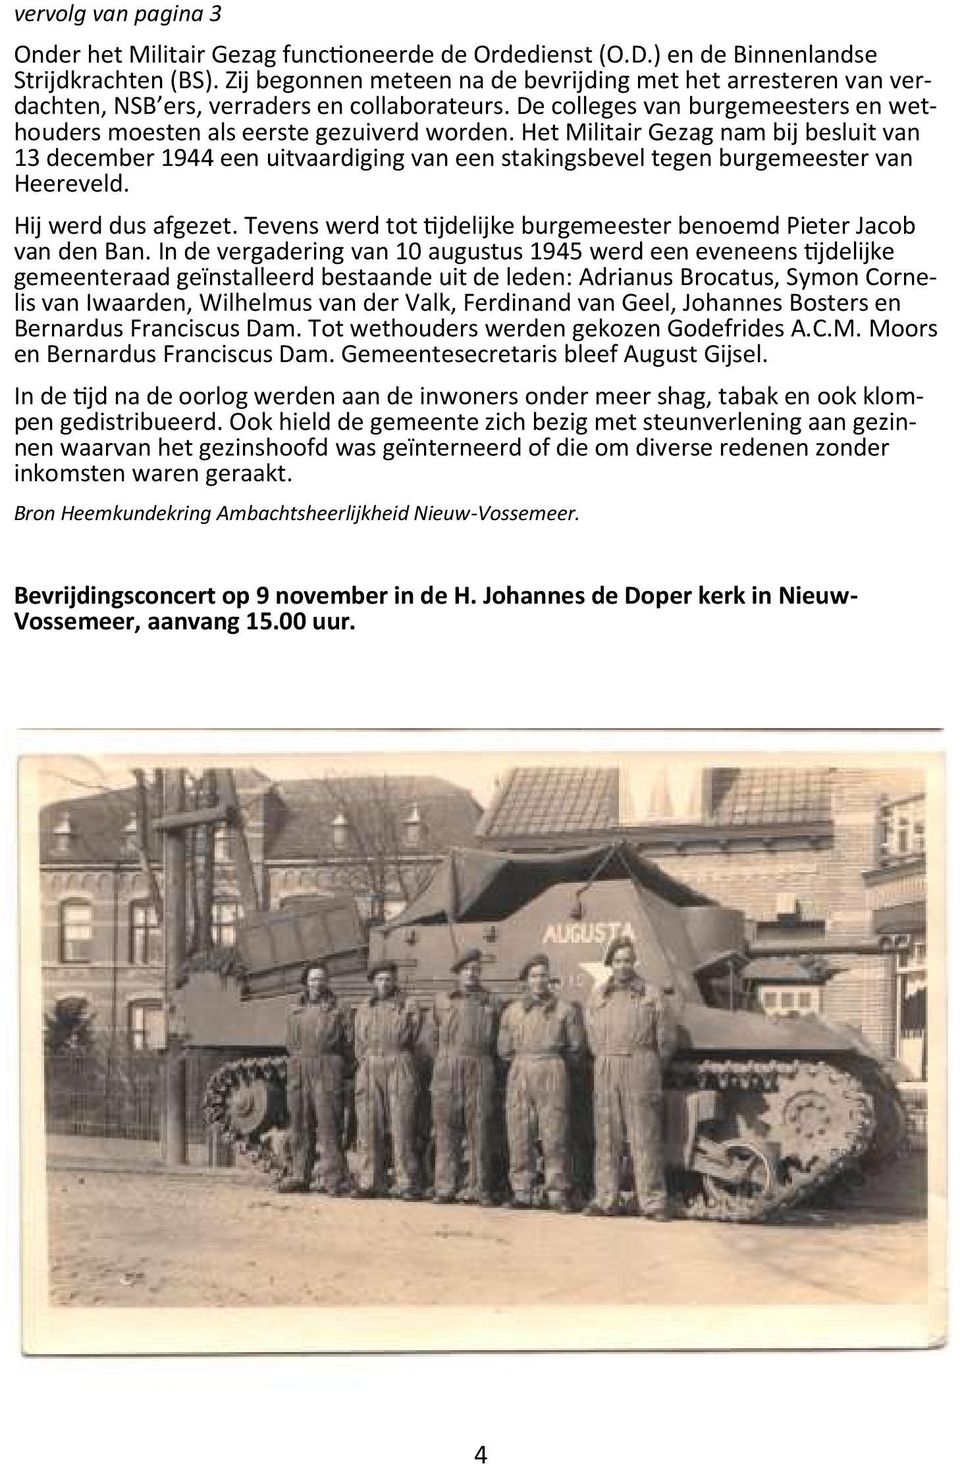 Het Militair Gezag nam bij besluit van 13 december 1944 een uitvaardiging van een stakingsbevel tegen burgemeester van Heereveld. Hij werd dus afgezet.